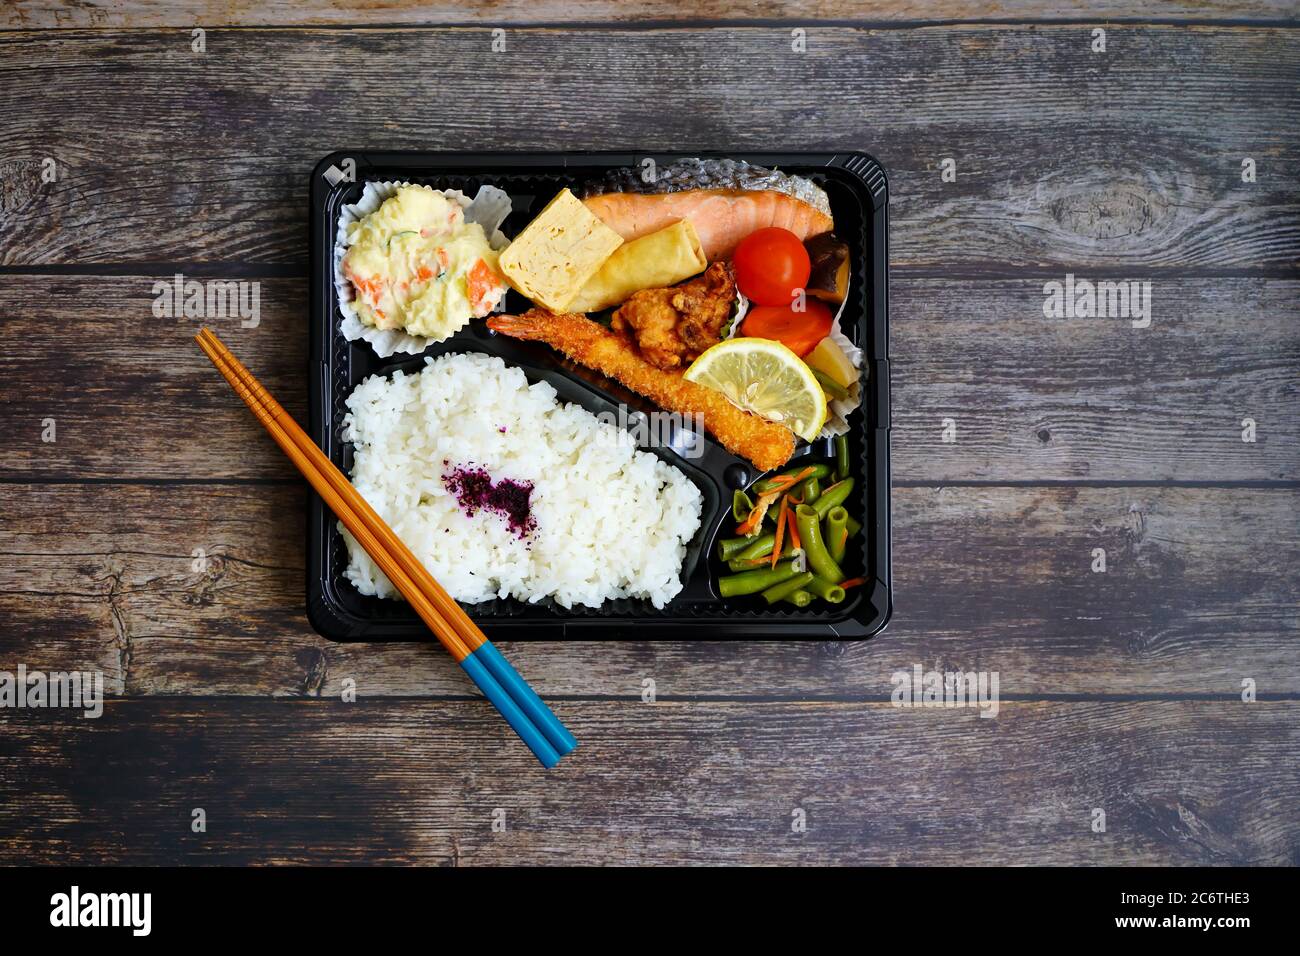 Scatola di bento giapponese colorata „Makunouchi con salmone, gamberi fritti, insalata di patate, tofu, pollo alla griglia, riso e verdure. Rustico tavolo di legno scuro. Foto Stock